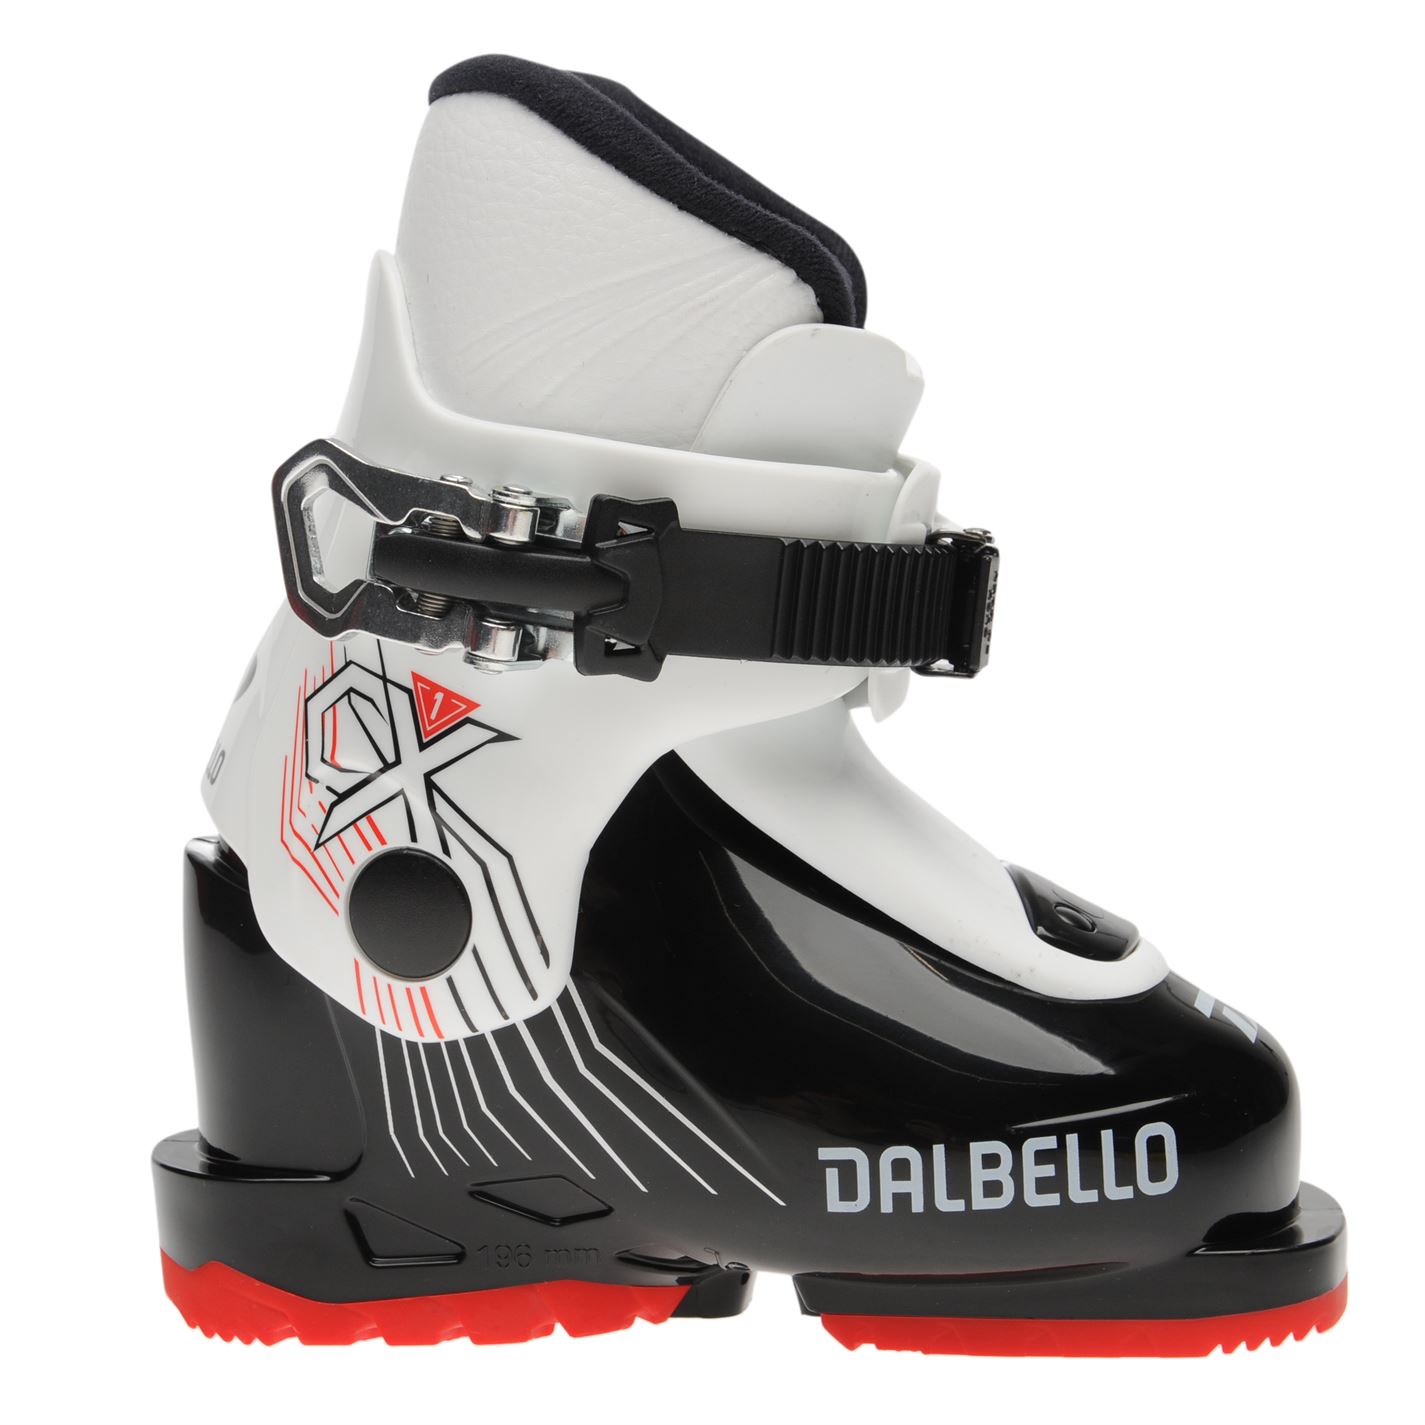 Clapari ski Dalbello CX1 Juniors